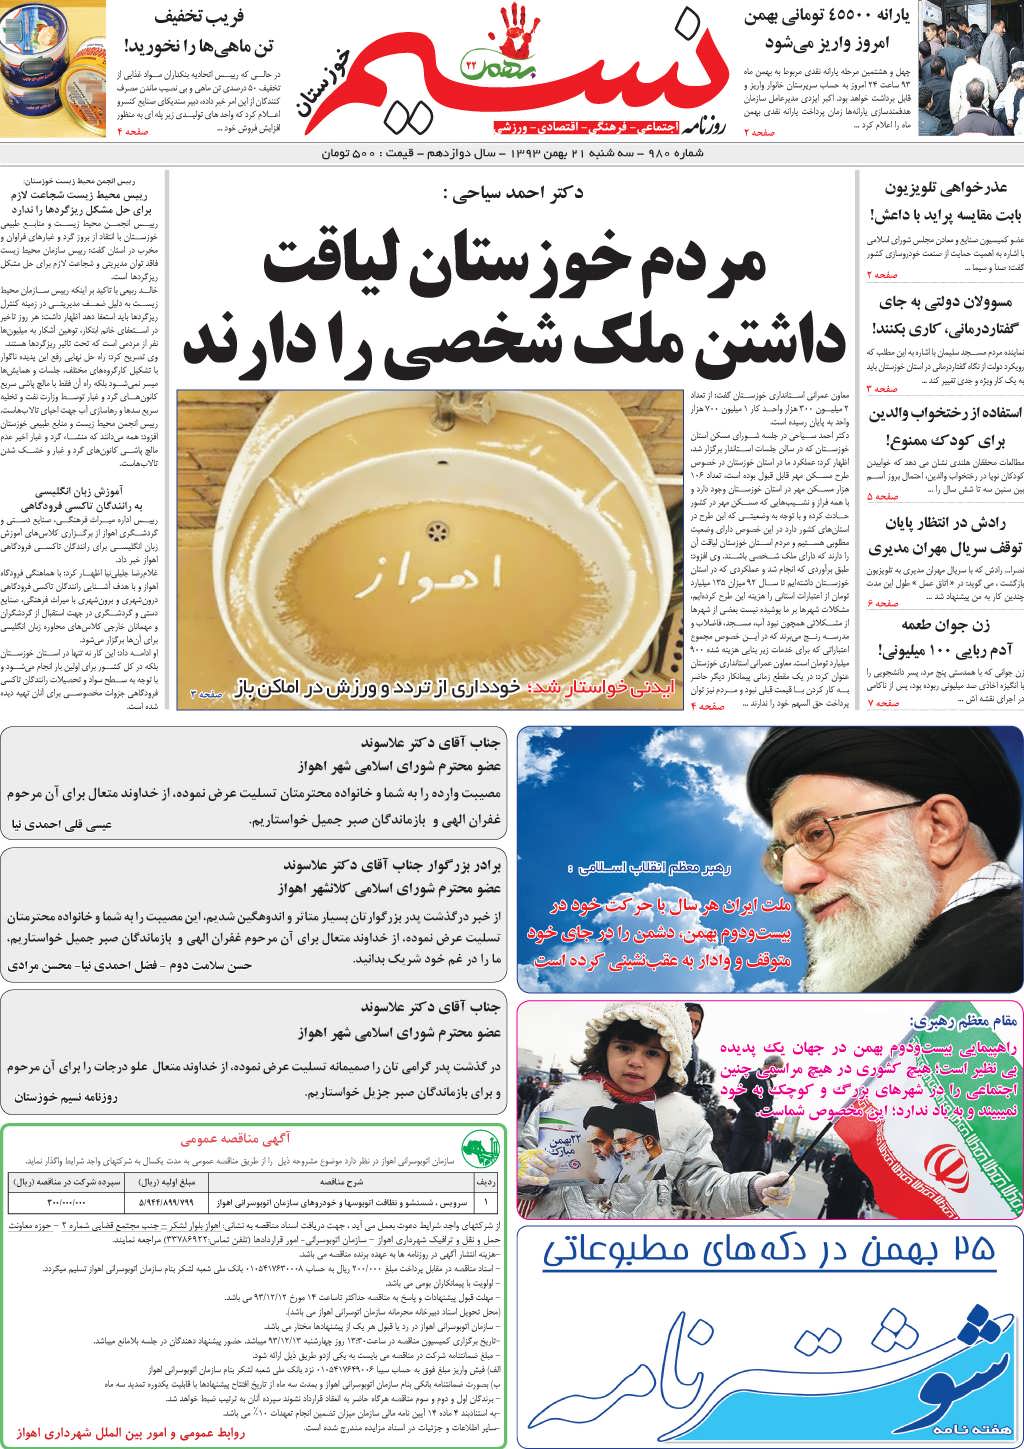 صفحه اصلی روزنامه نسیم شماره 980